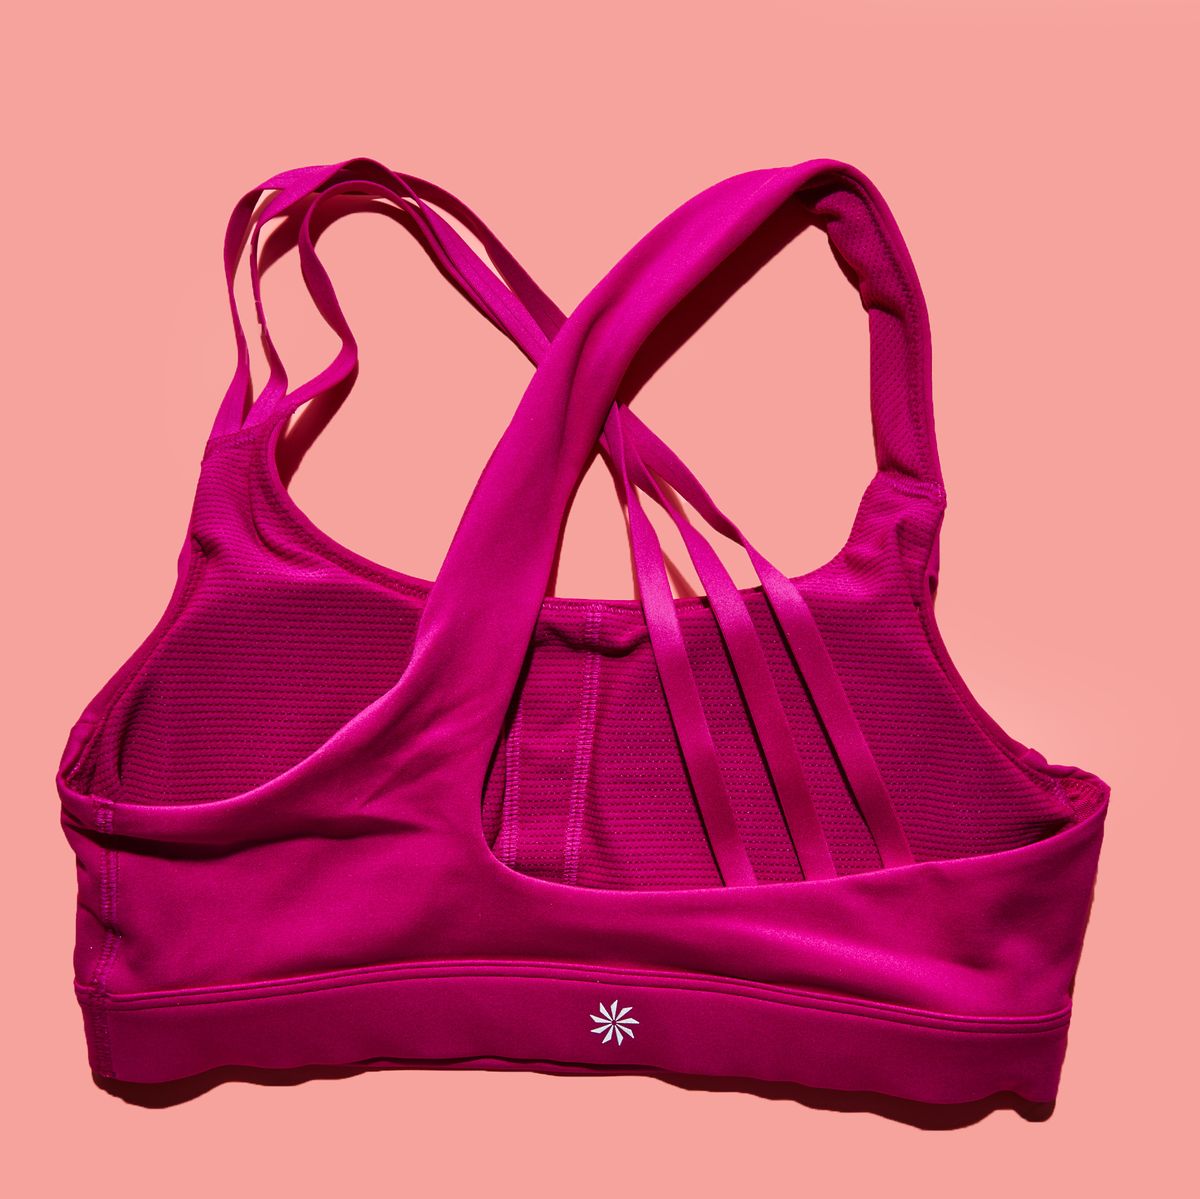 Athleta Phenomena Sports Bra size 36DD light pink Brand New